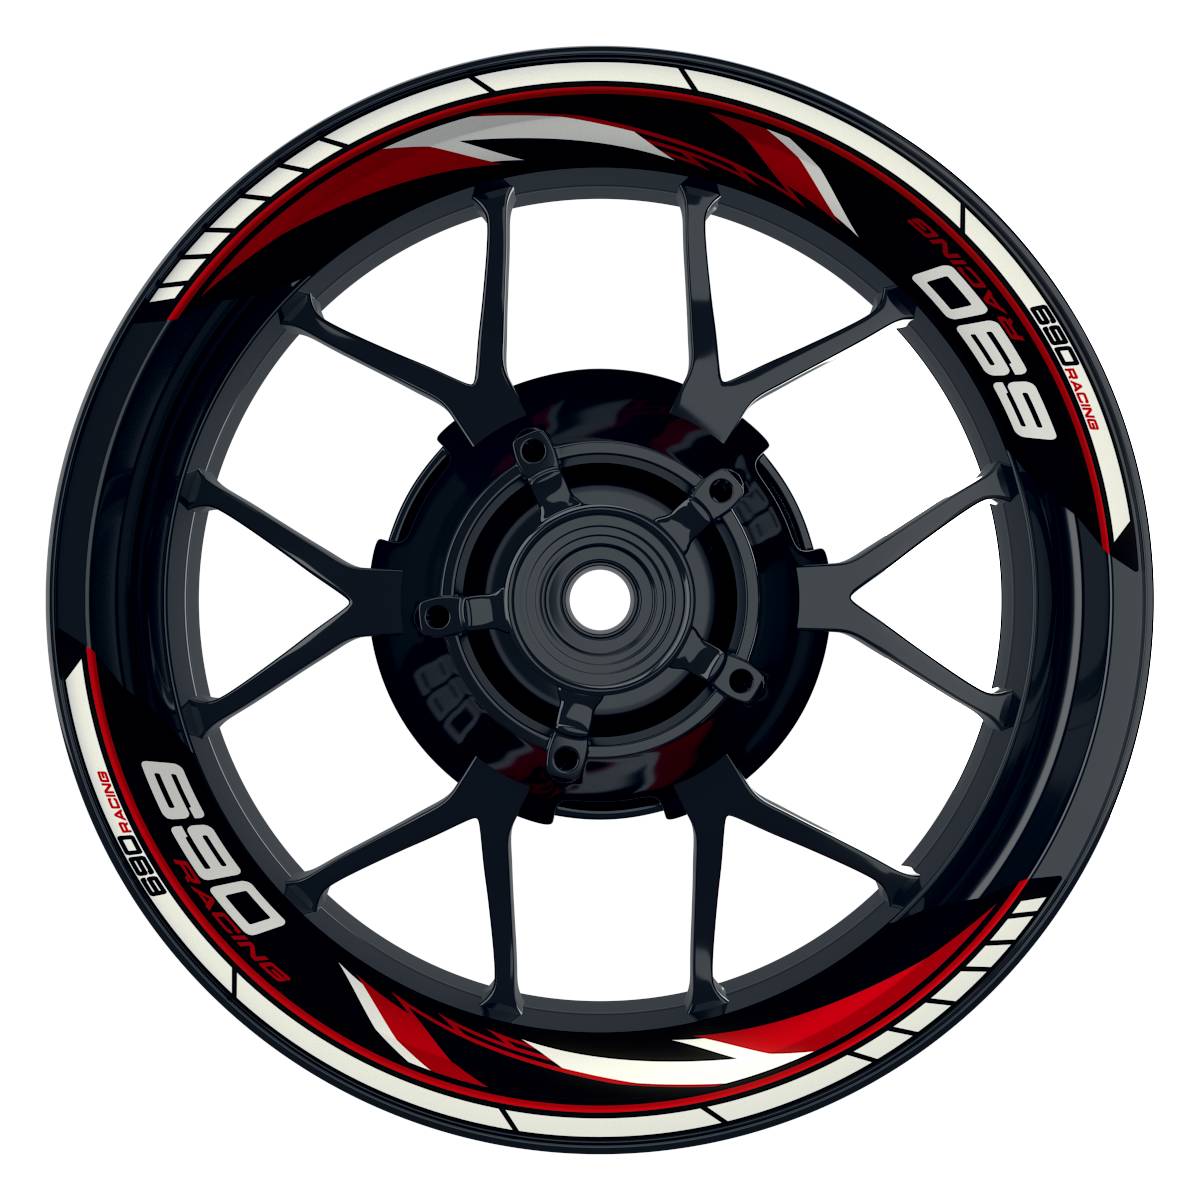 KTM Racing 690 Razor schwarz rot Frontansicht